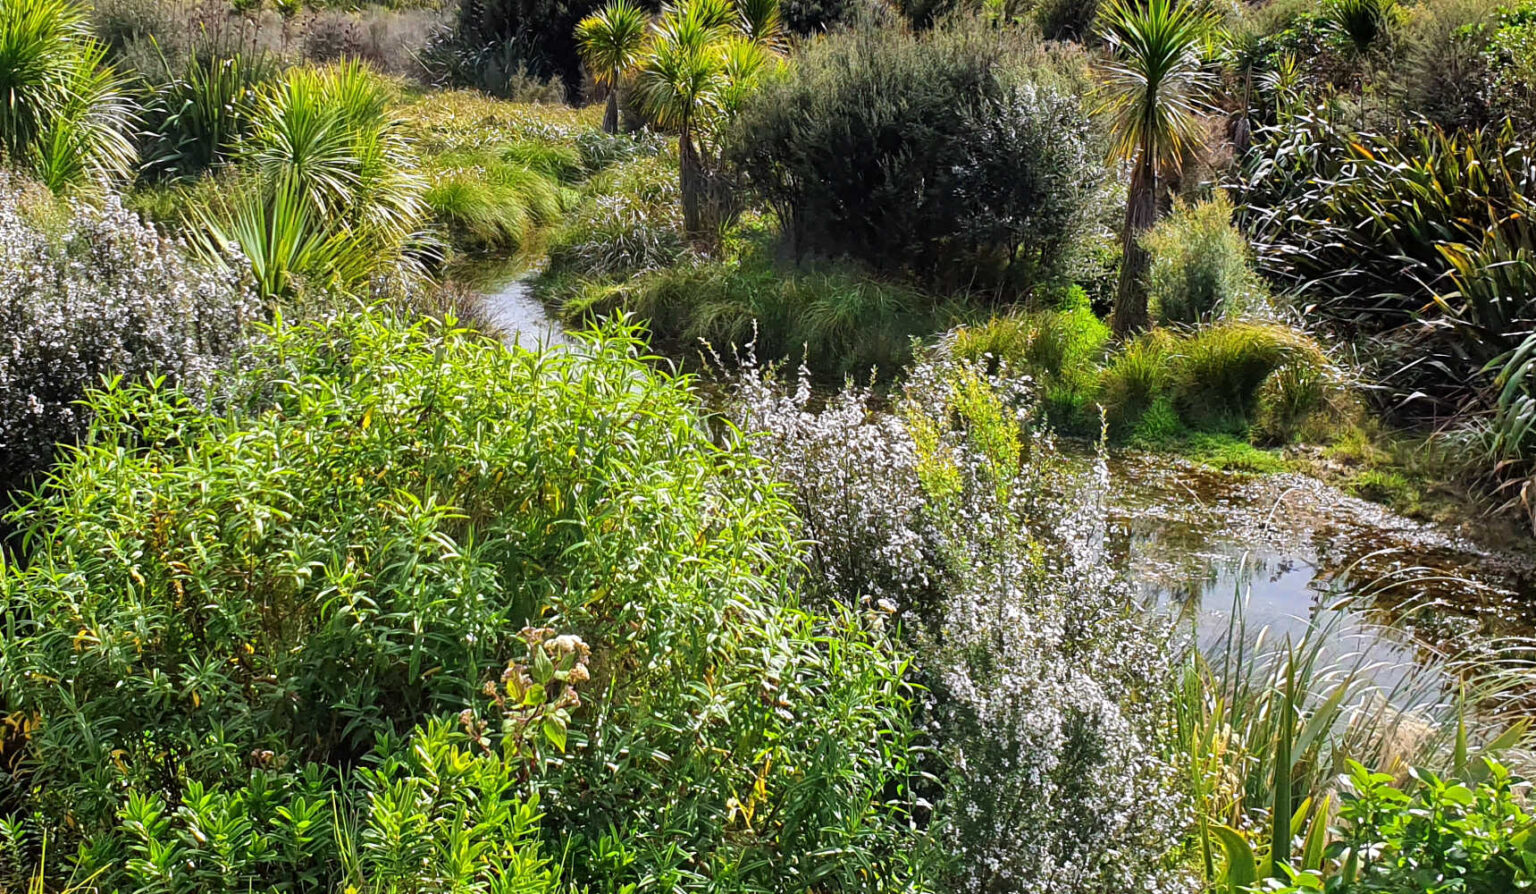 Cape Brett walk regenerating bush, Rawhiti, New Zealand